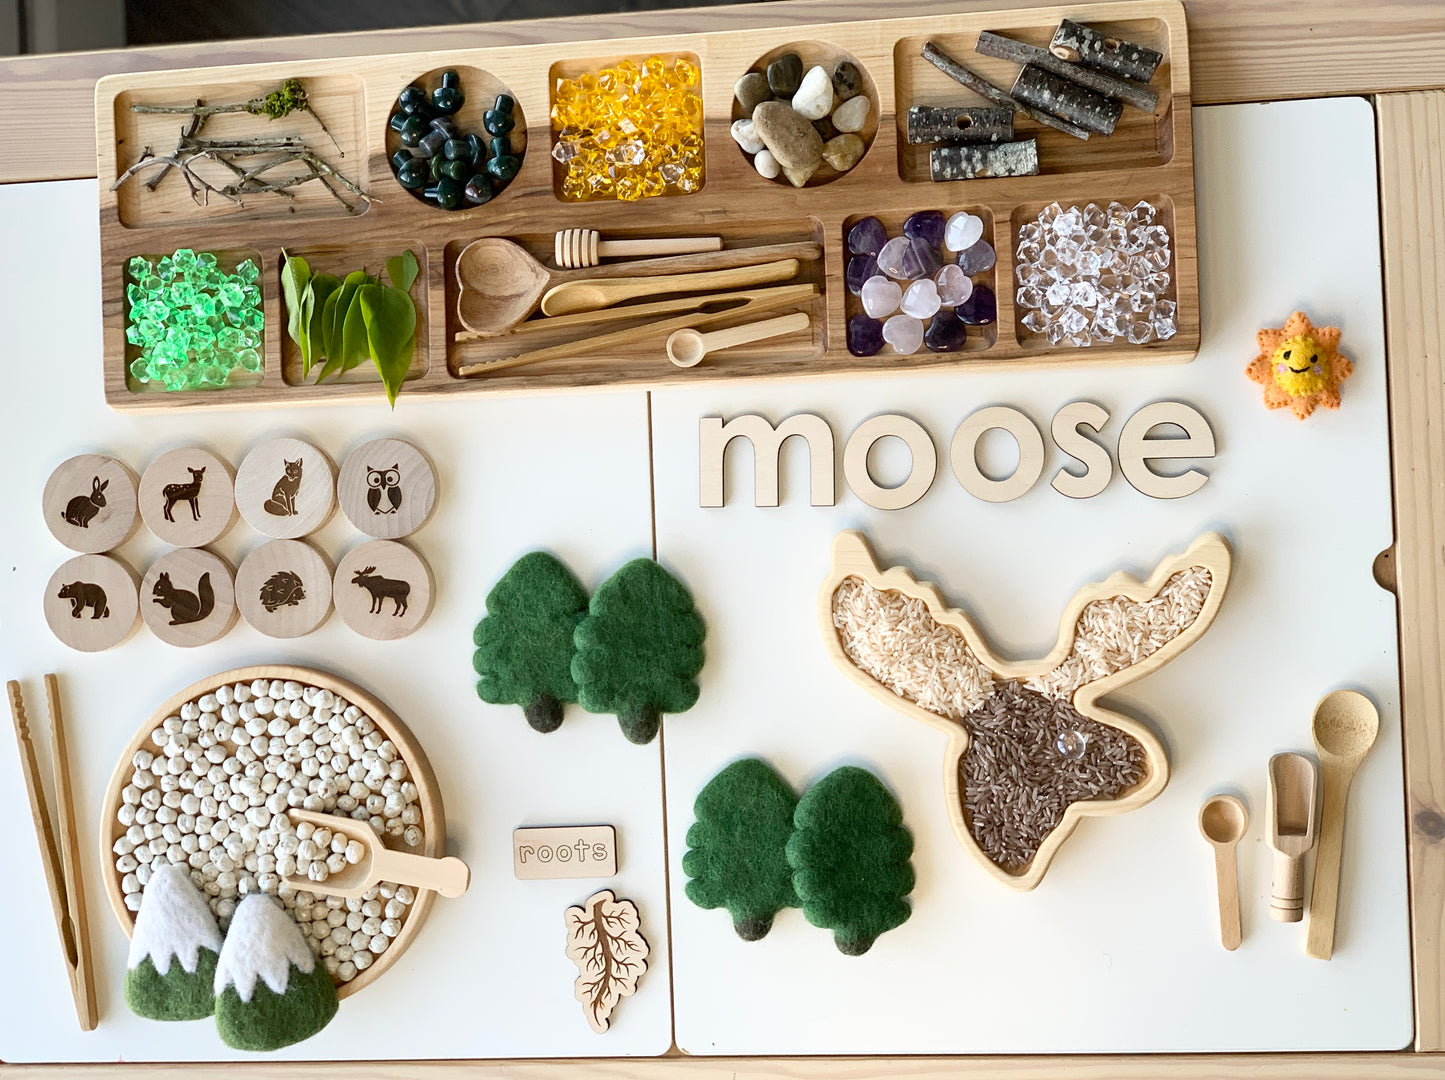 Moose Plate / Sensory Tray